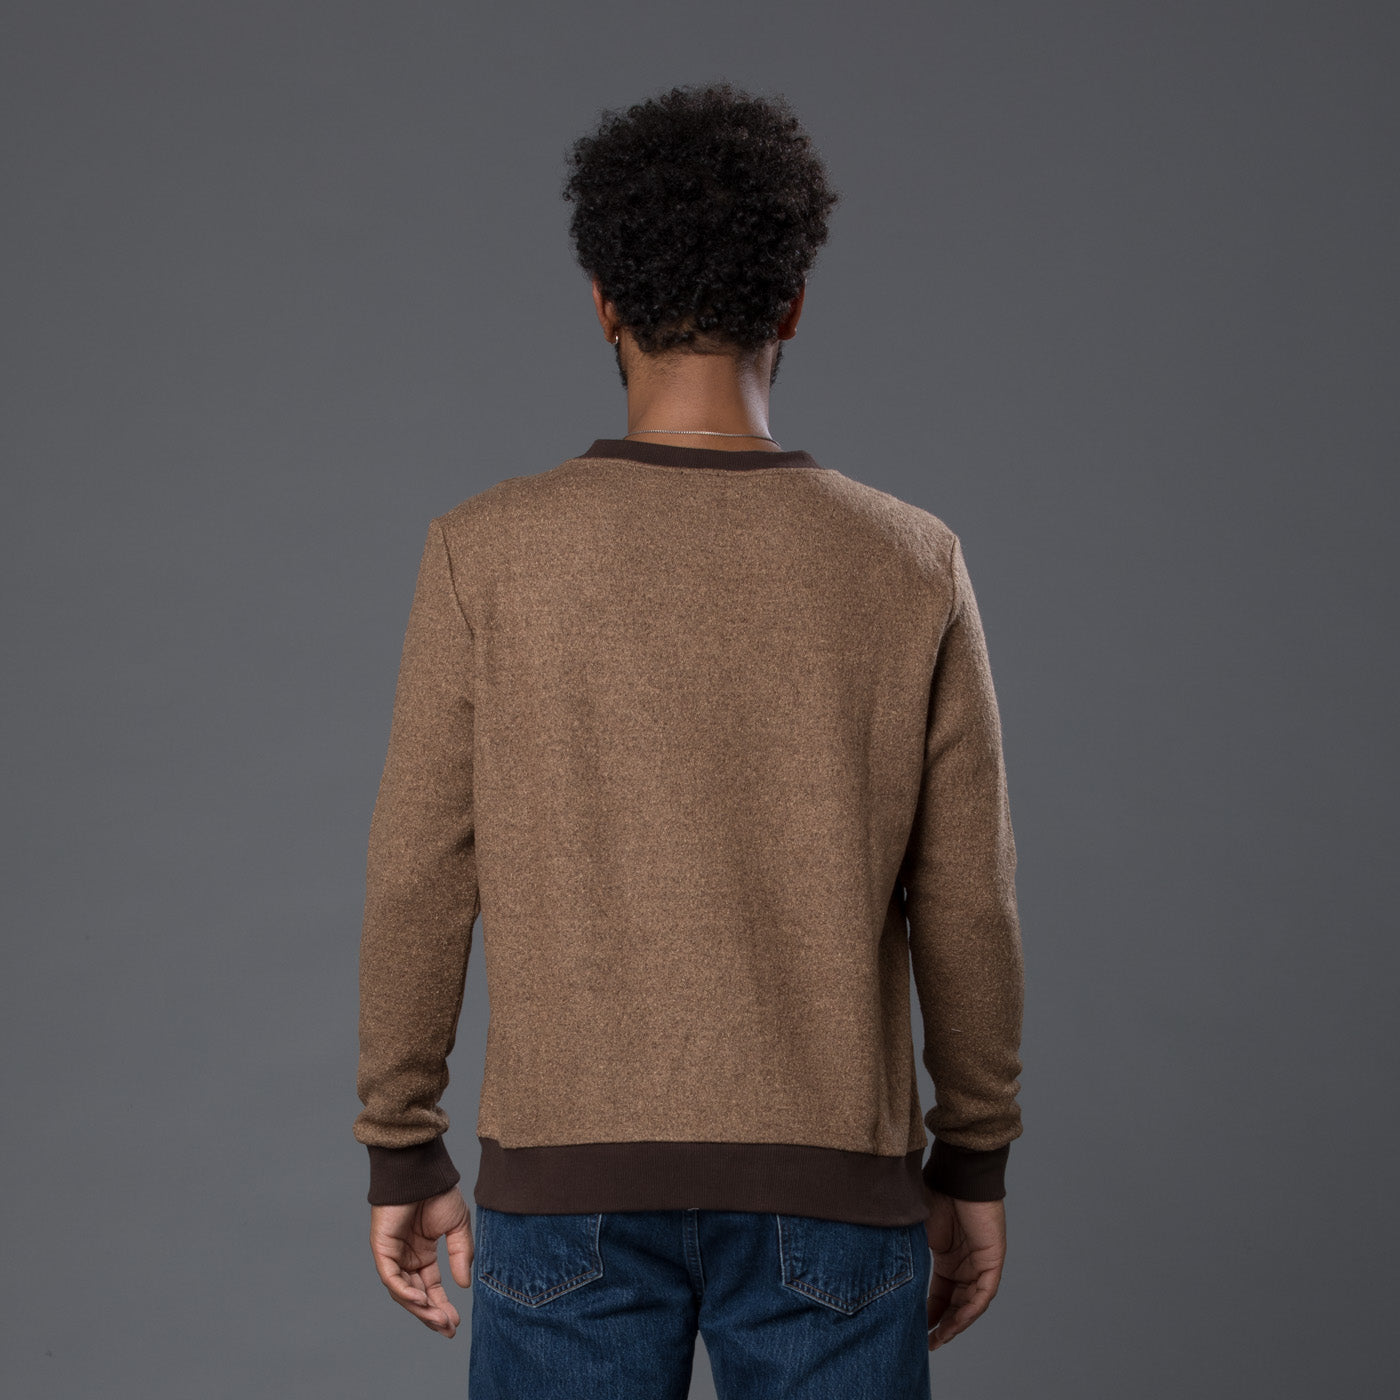 Thaddeus O'Neil Brown Sweater